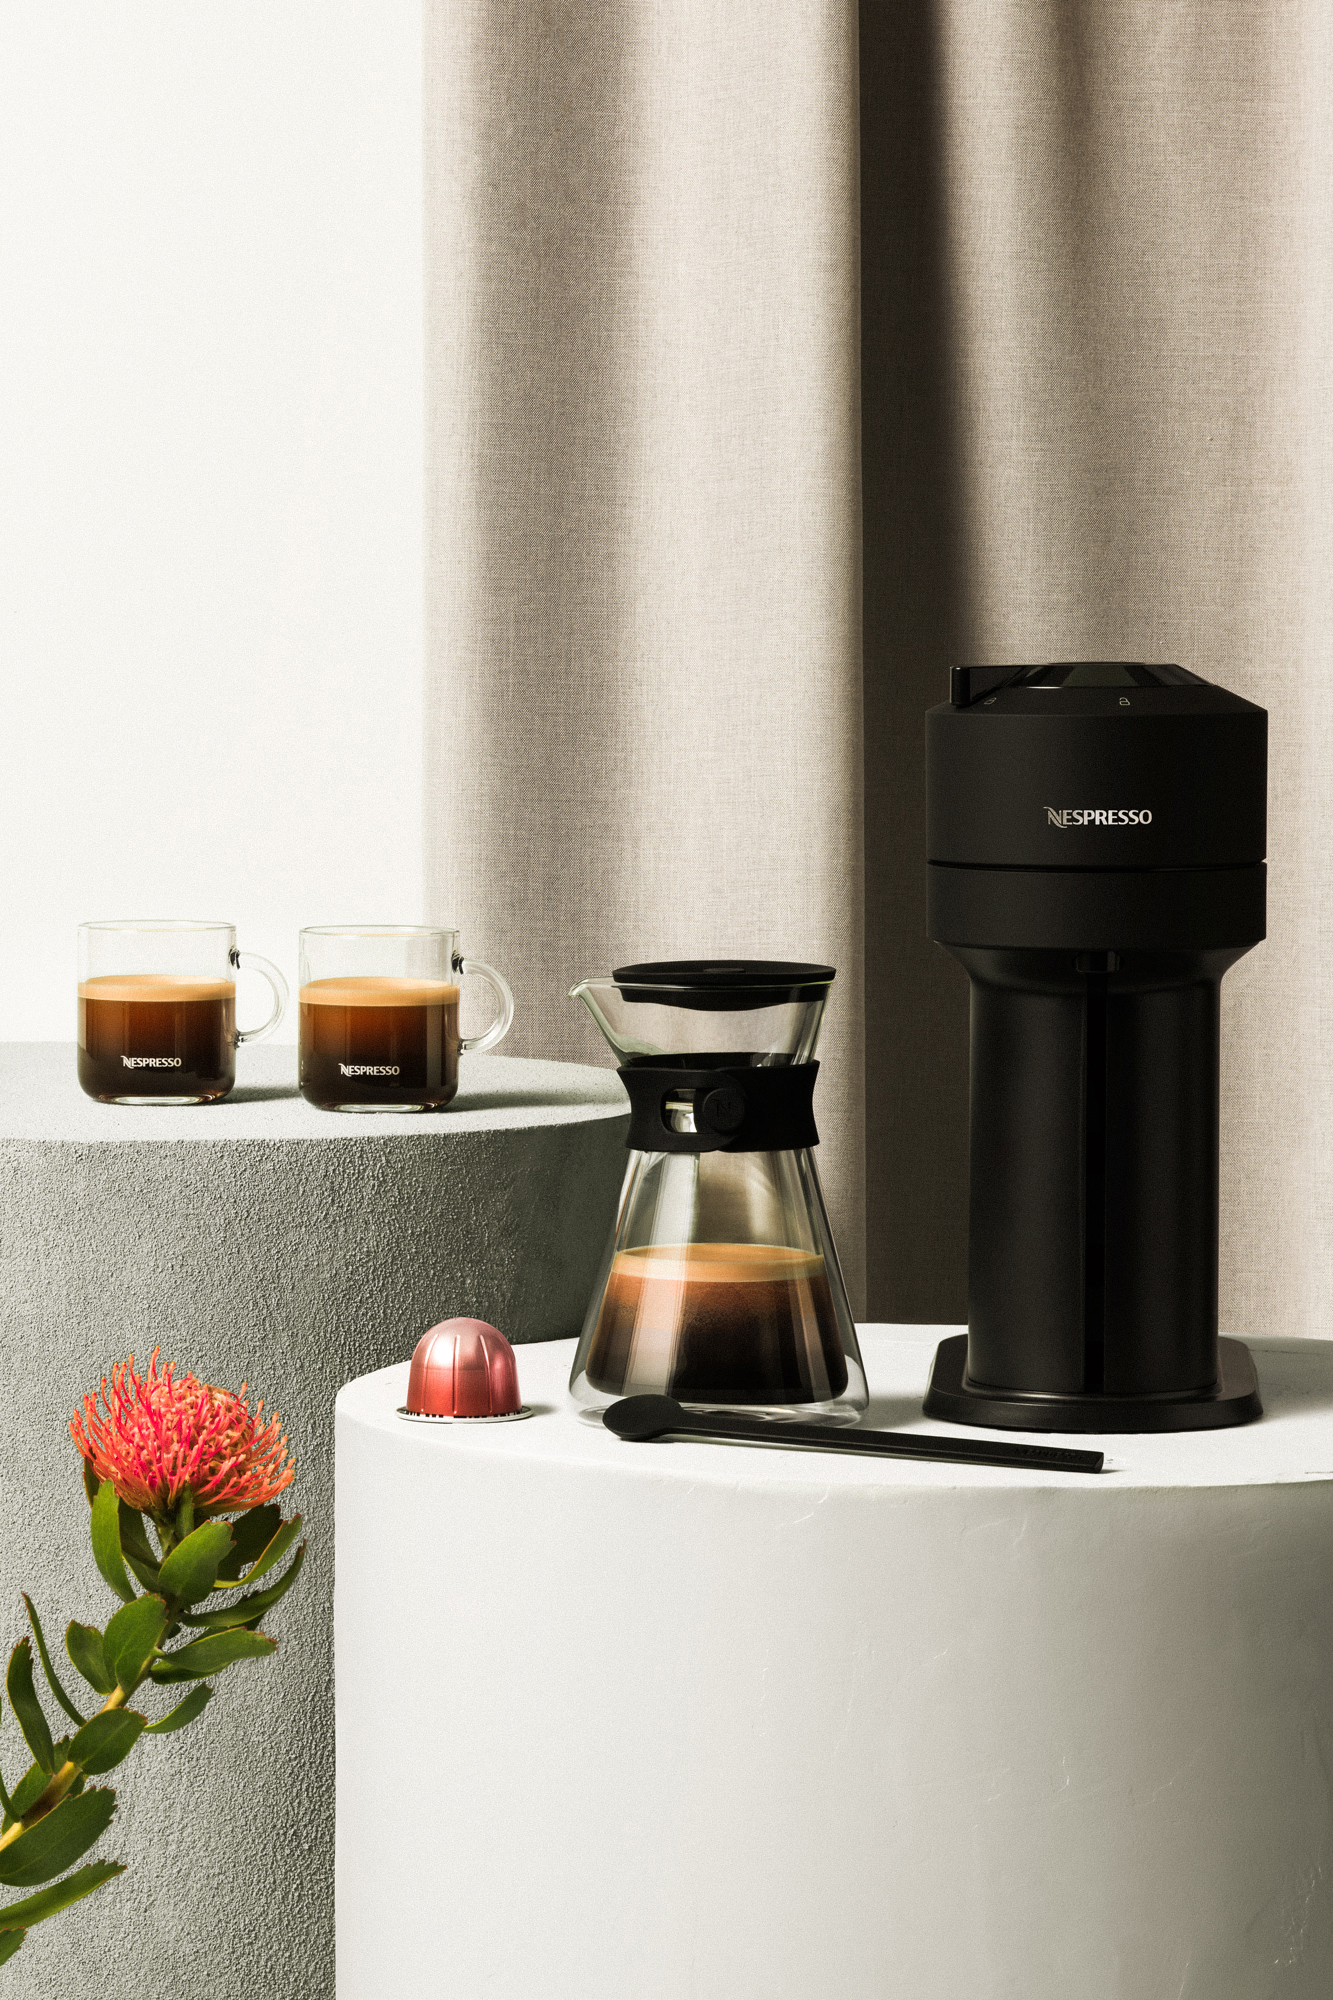 De Nespresso Vertuo Next koffiemachine Nespresso is verkrijgbaar met een mat zwarte afwerking.